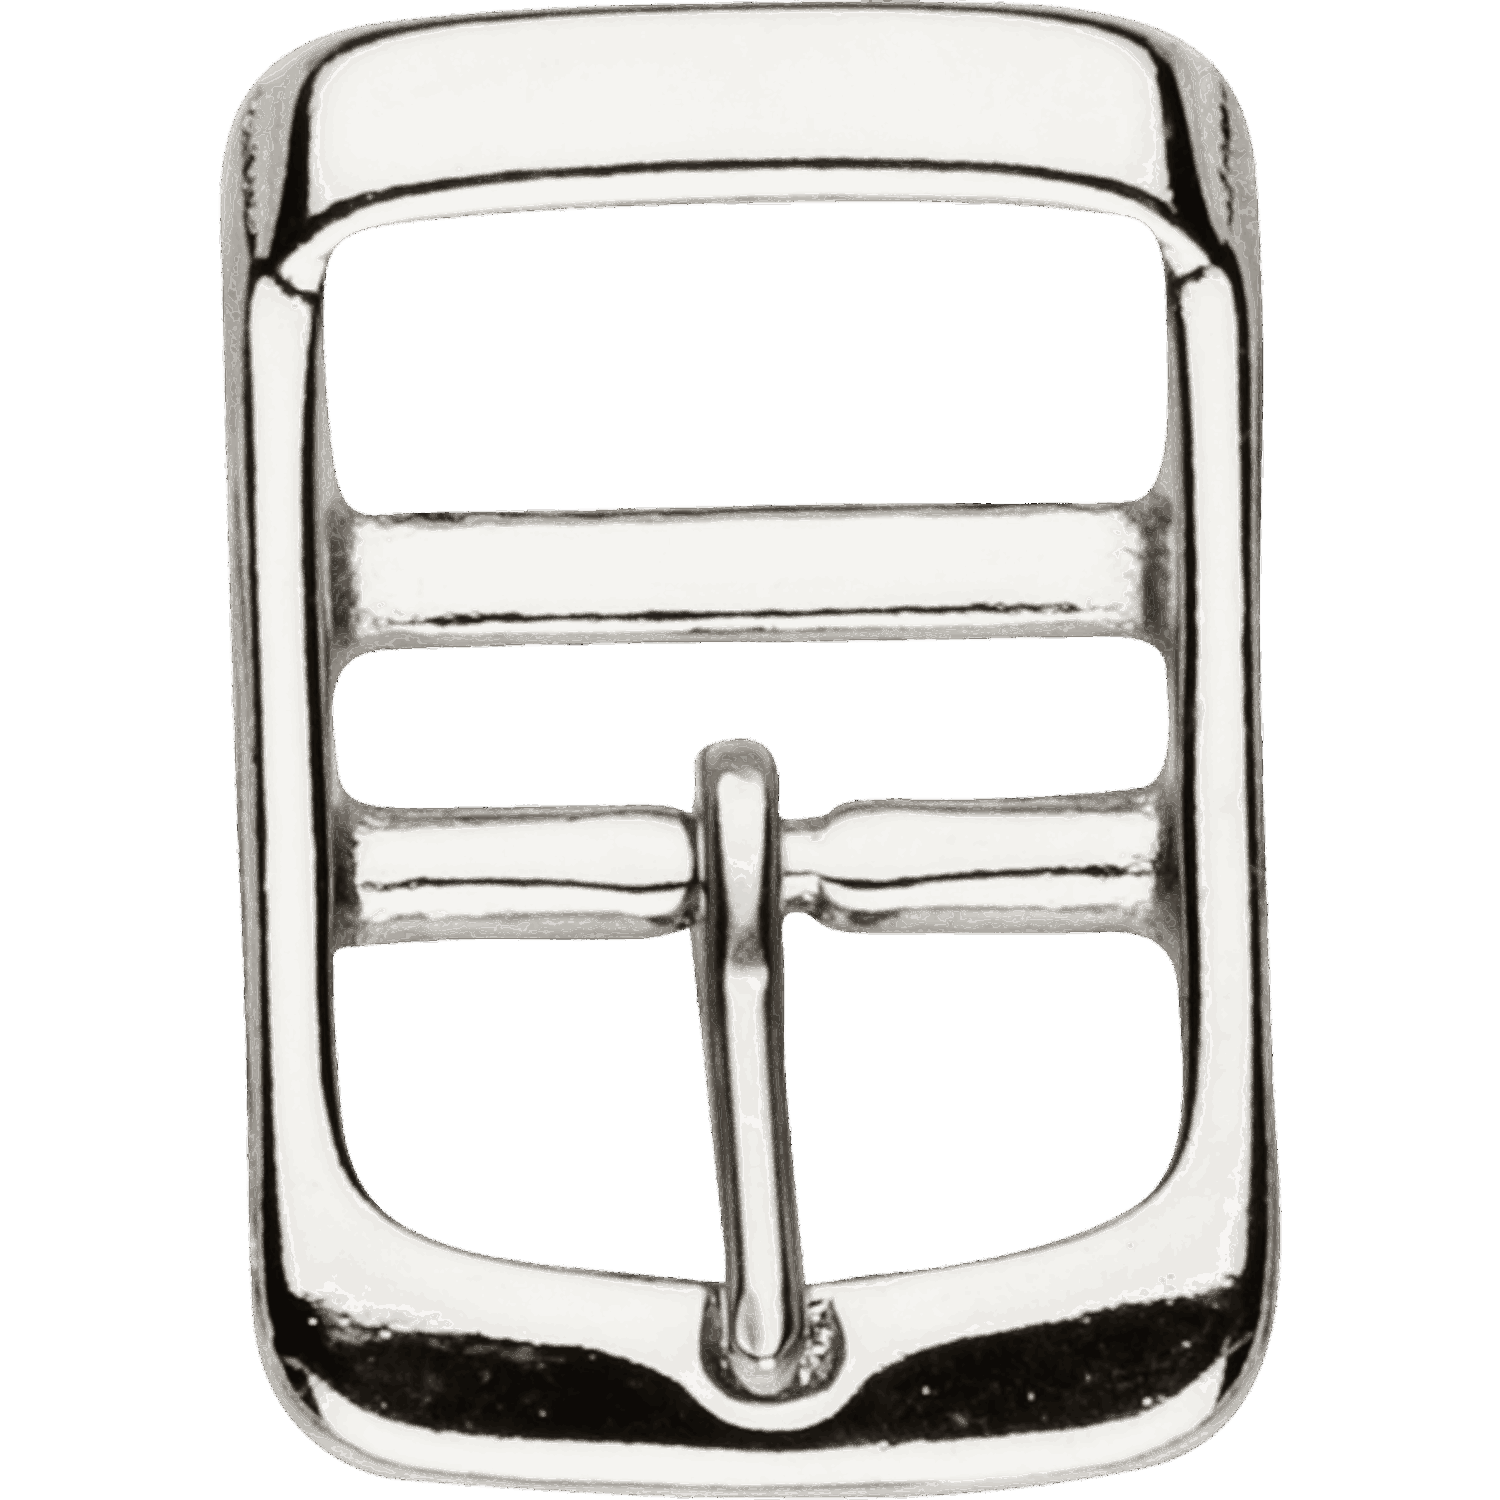 Schnalle für Deckengurte mit Doppelsteg und fixiertem Dorn - Stahl vernickelt, lichte Weite 27 mm | 46766_01.png | 1700897377